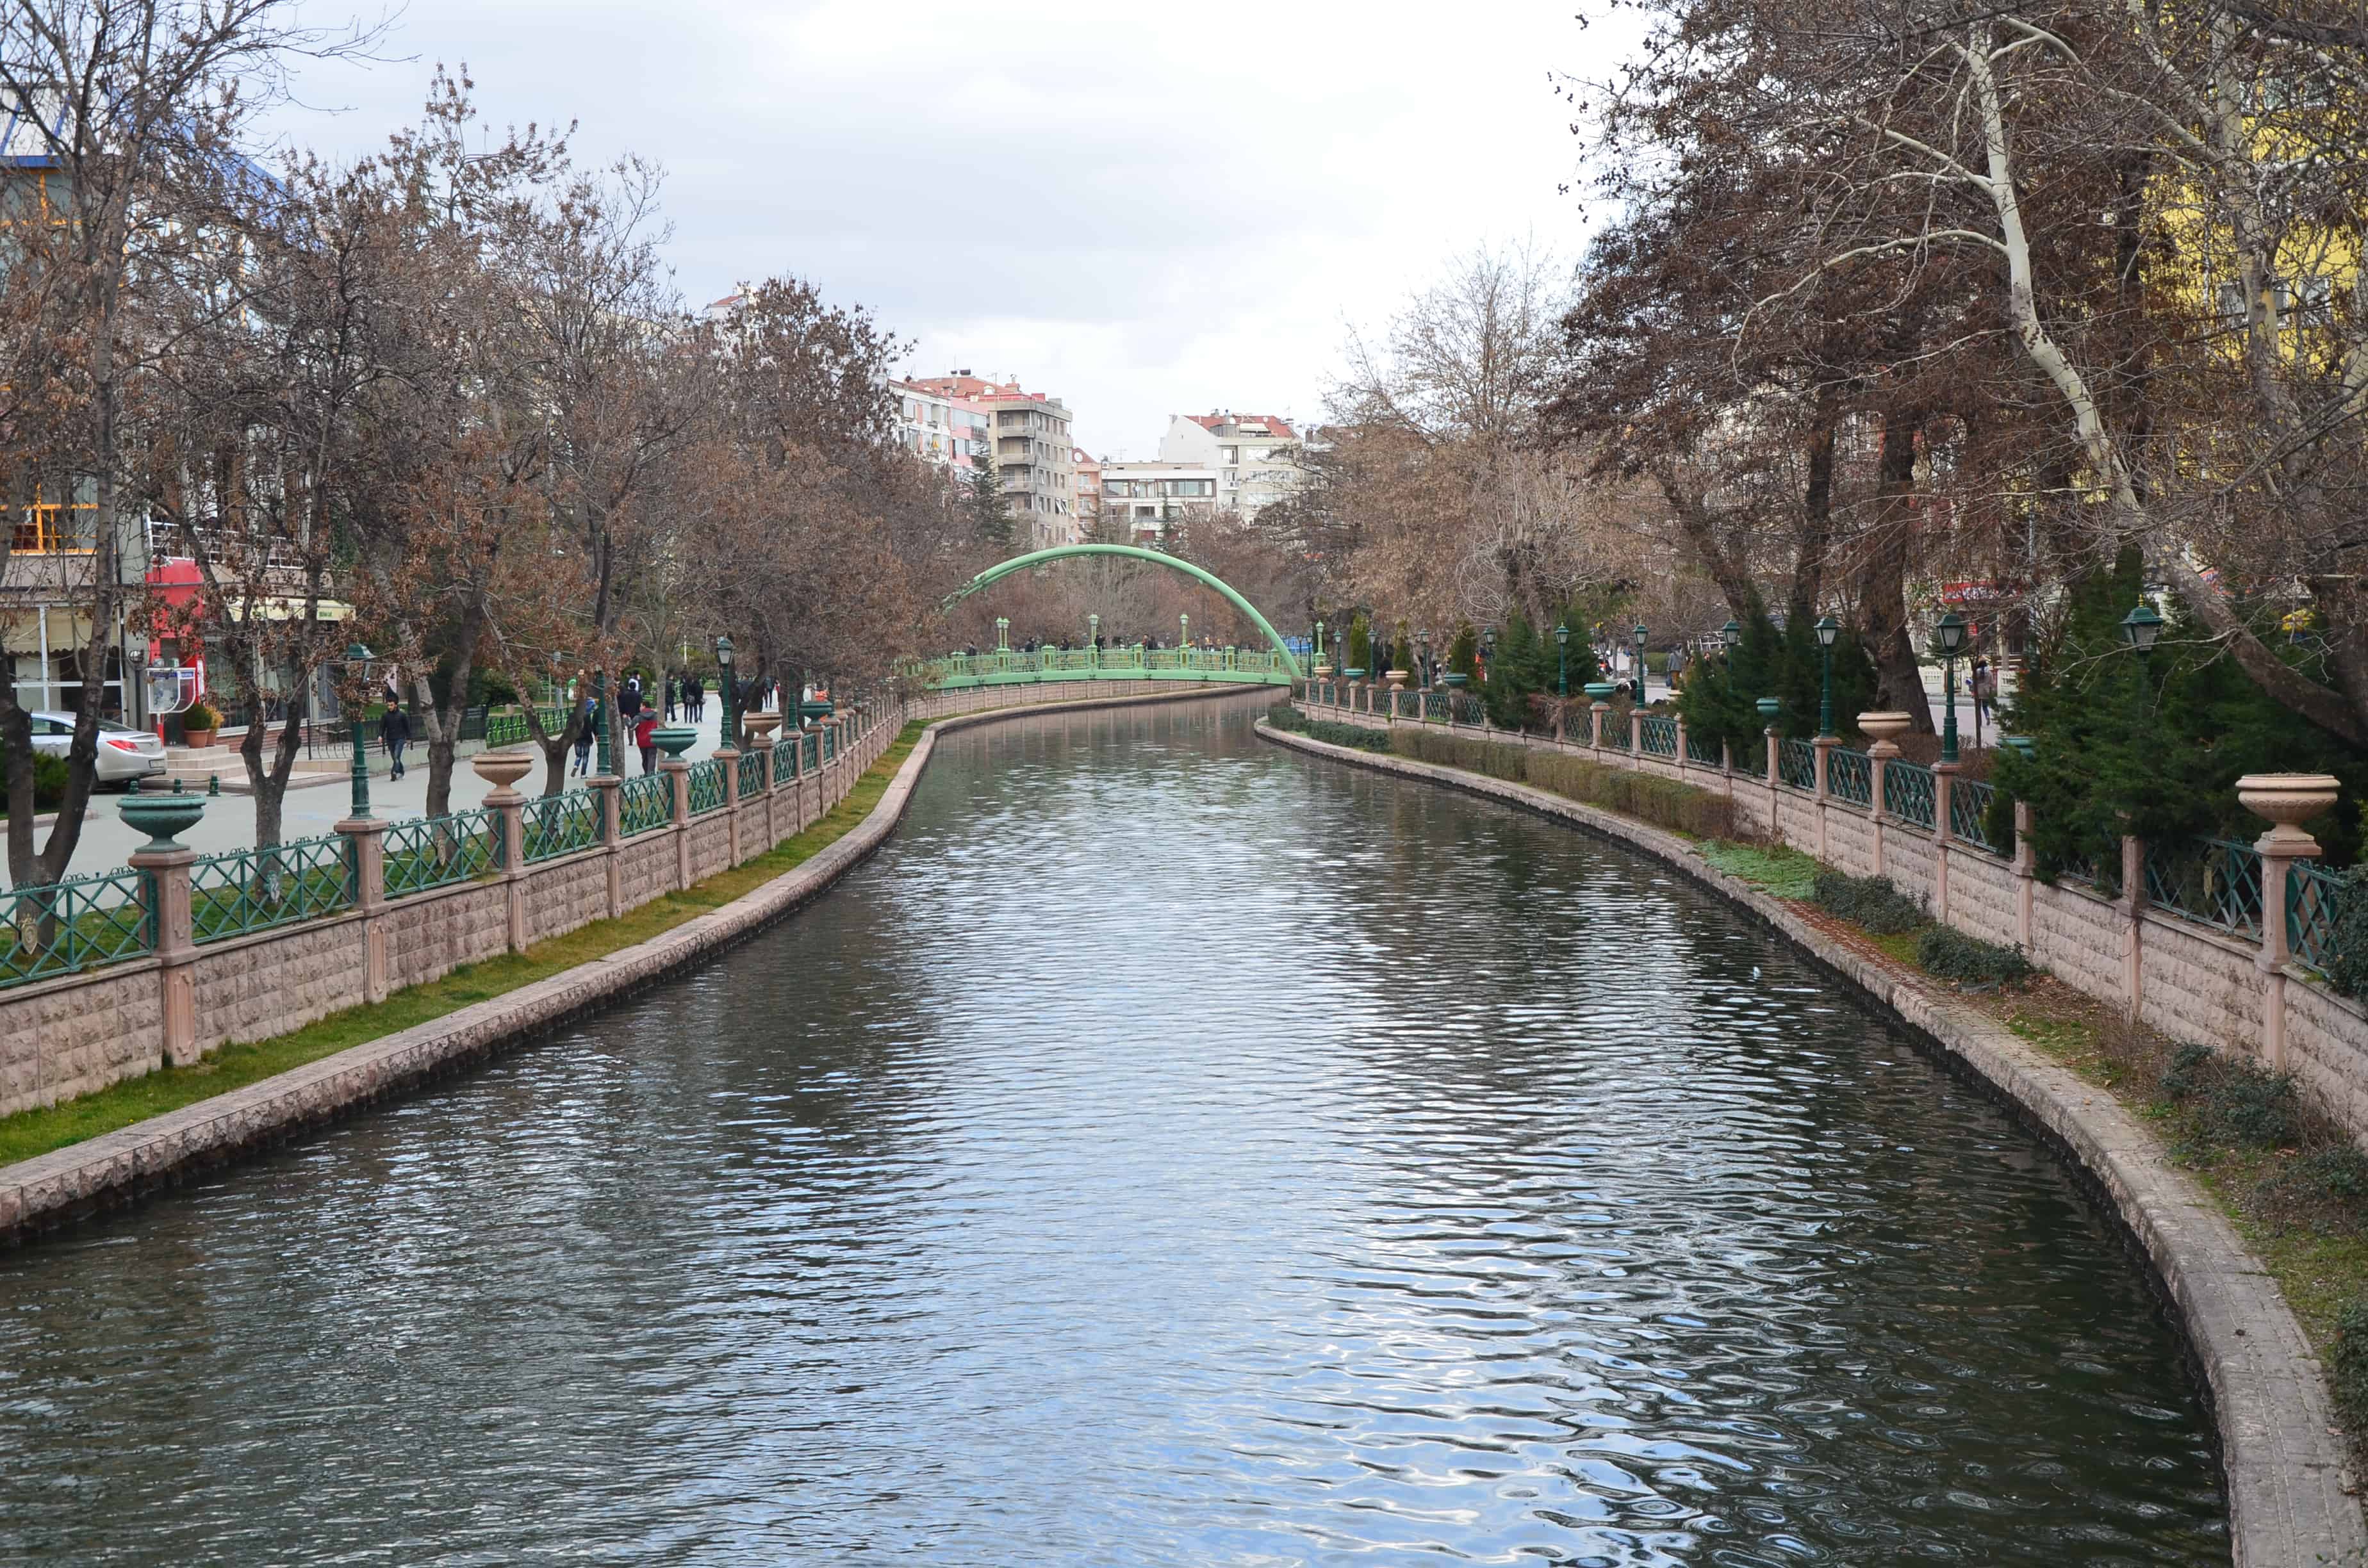 Porsuk River in Eskişehir, Turkey